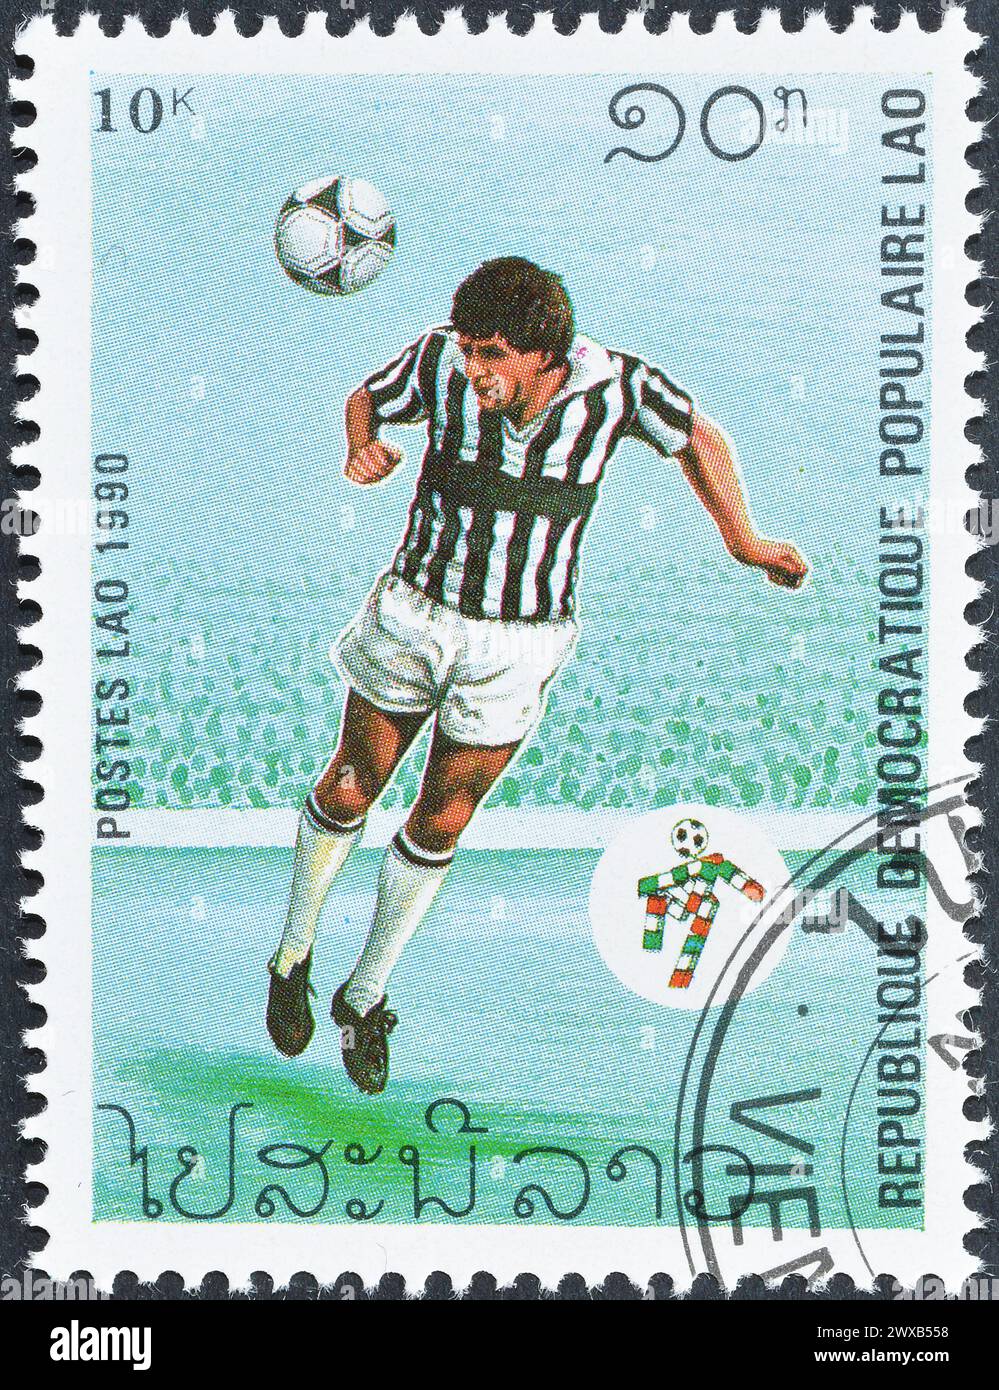 Gestempelte Briefmarke von Laos, die die FIFA Fussball-Weltmeisterschaft 1990, Italien, um 1990 fördert. Stockfoto